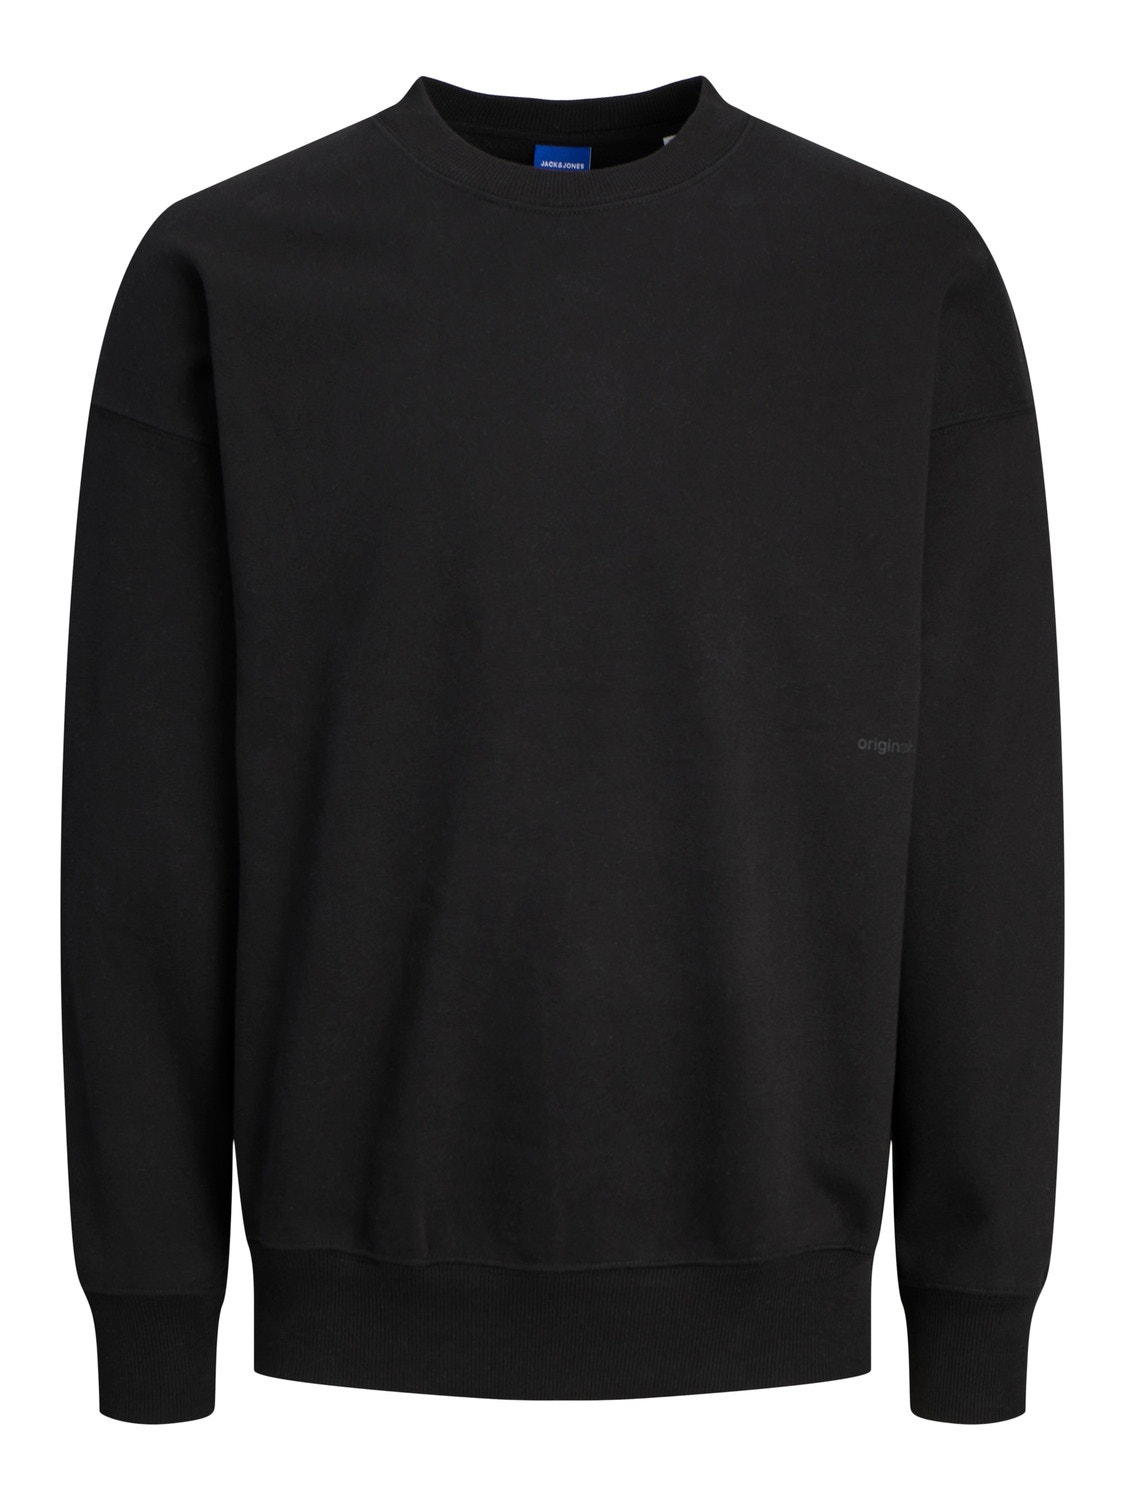 Jack & Jones Plain Crew neck Sweatshirt -Black - 12252408